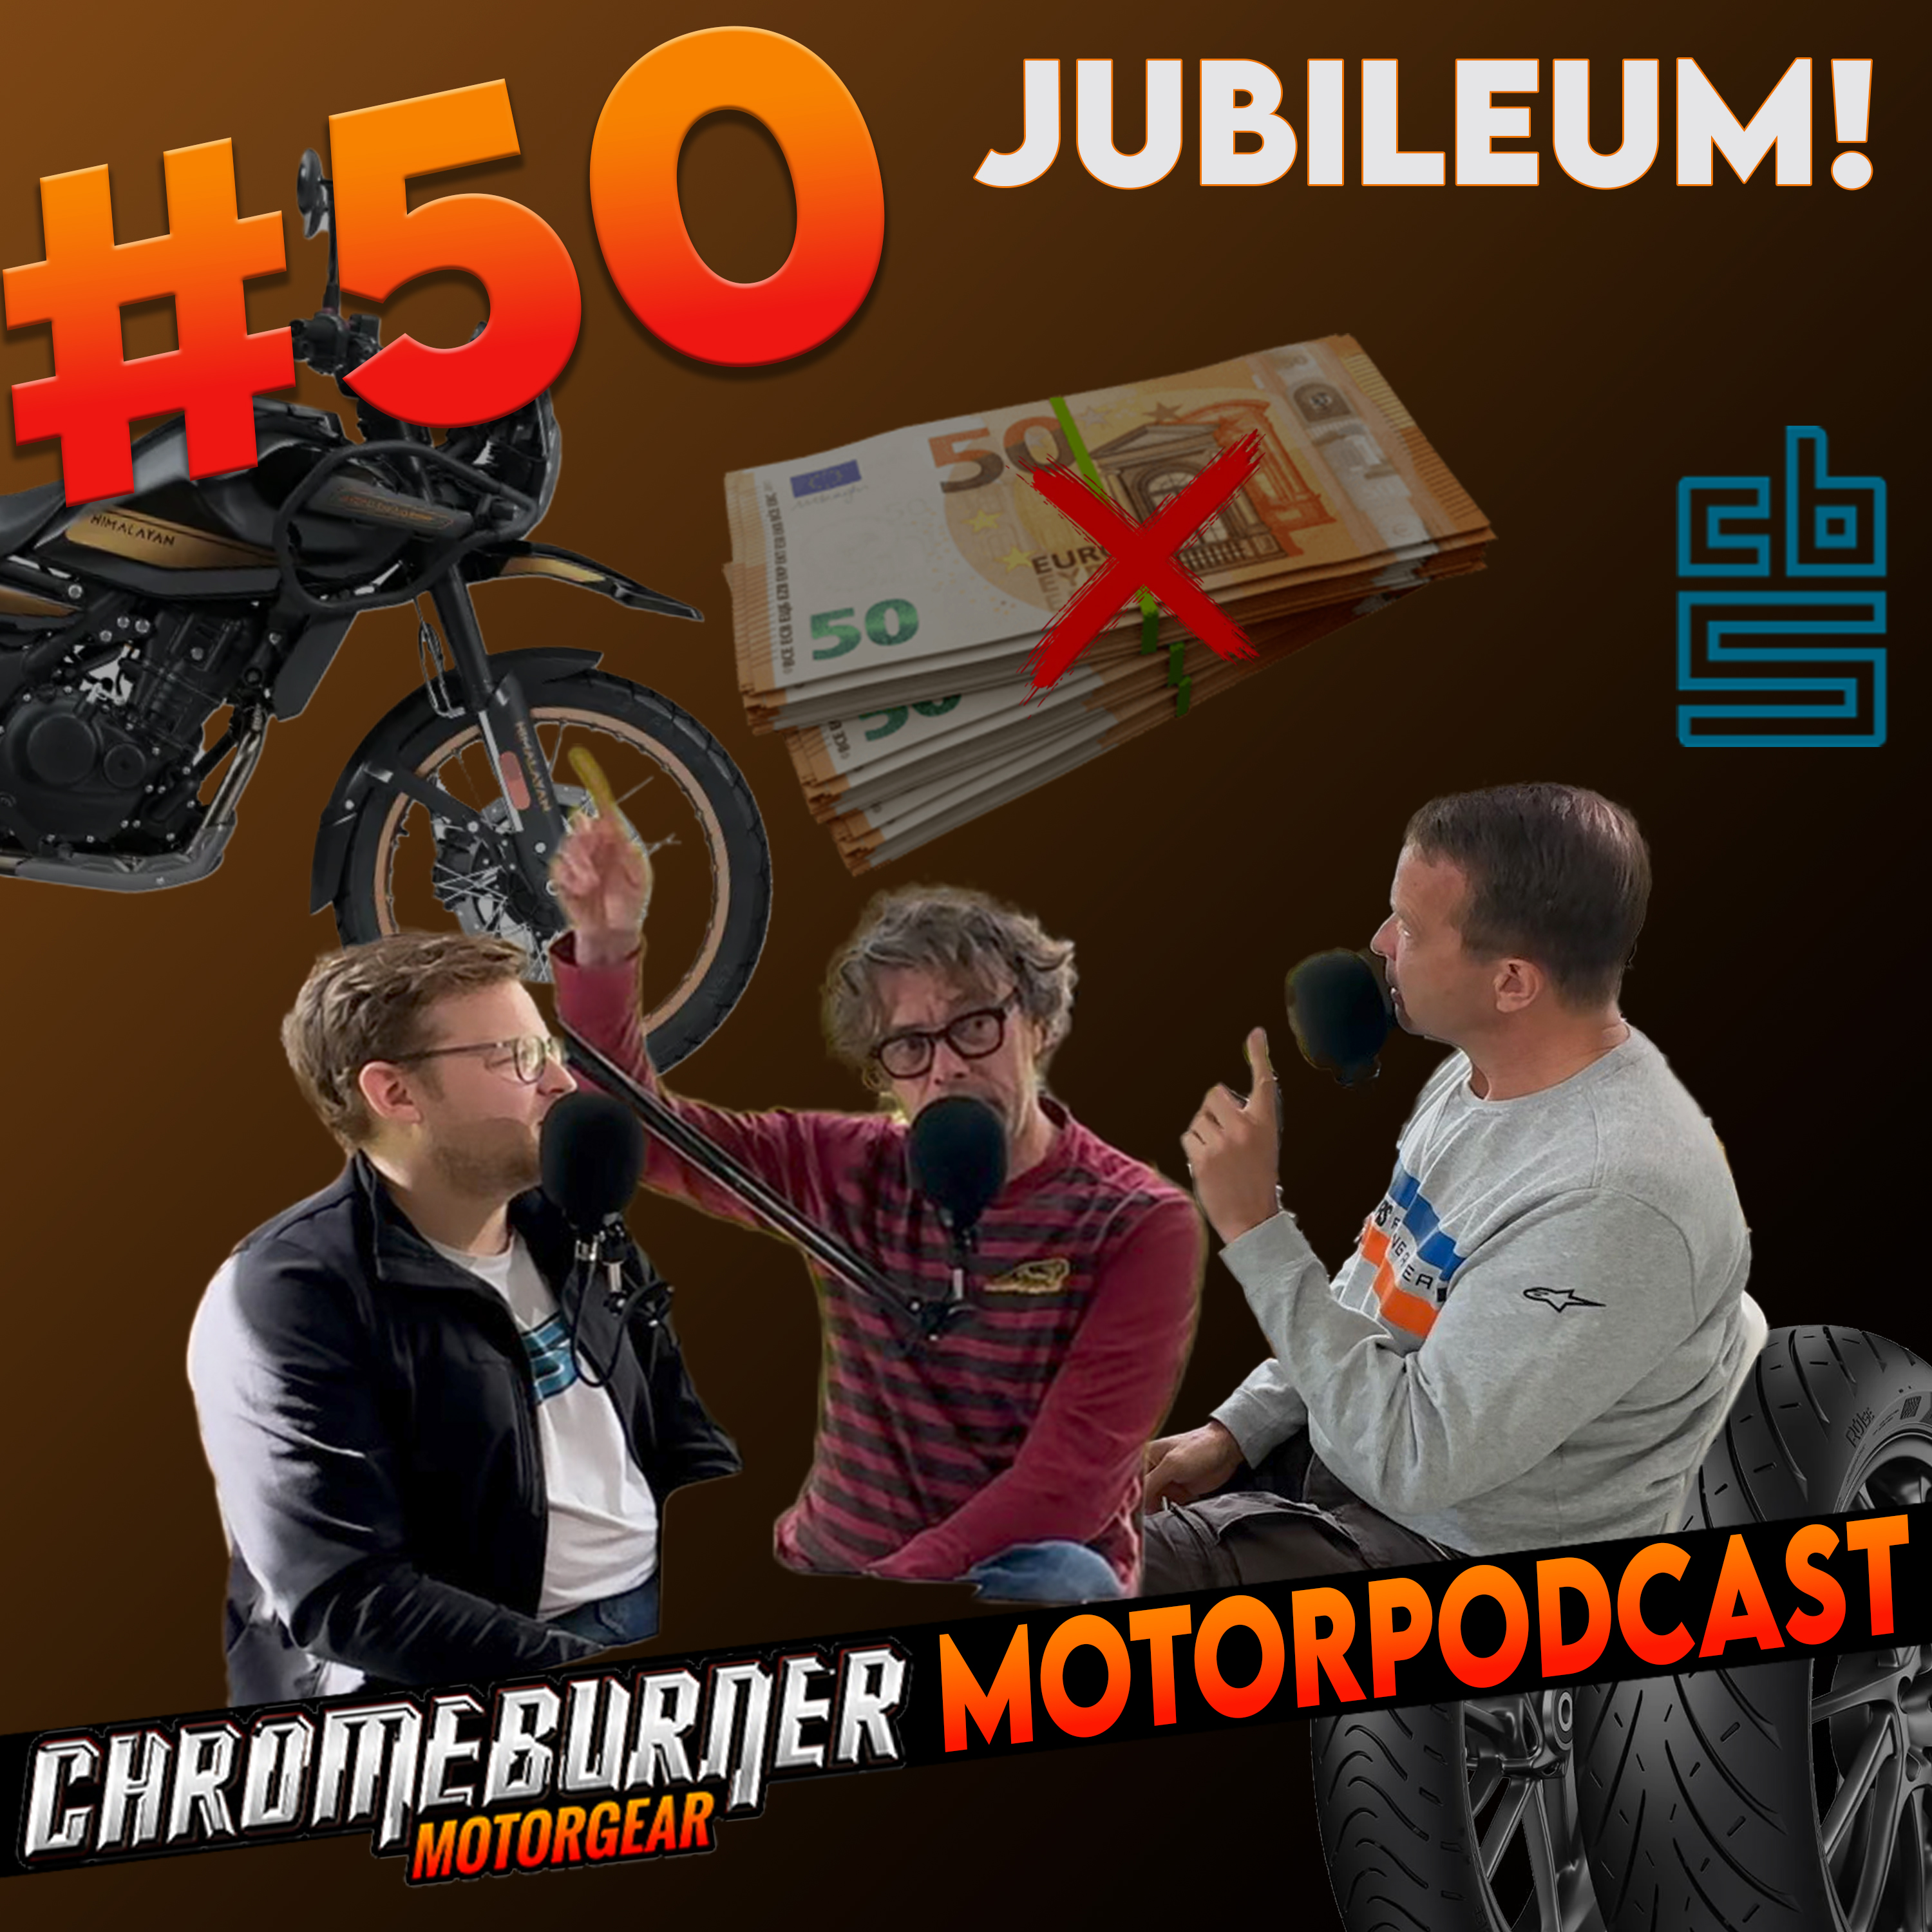 ChromeBurner MotorPodcast #50: DE MOTORPODCAST NUMMER 50!